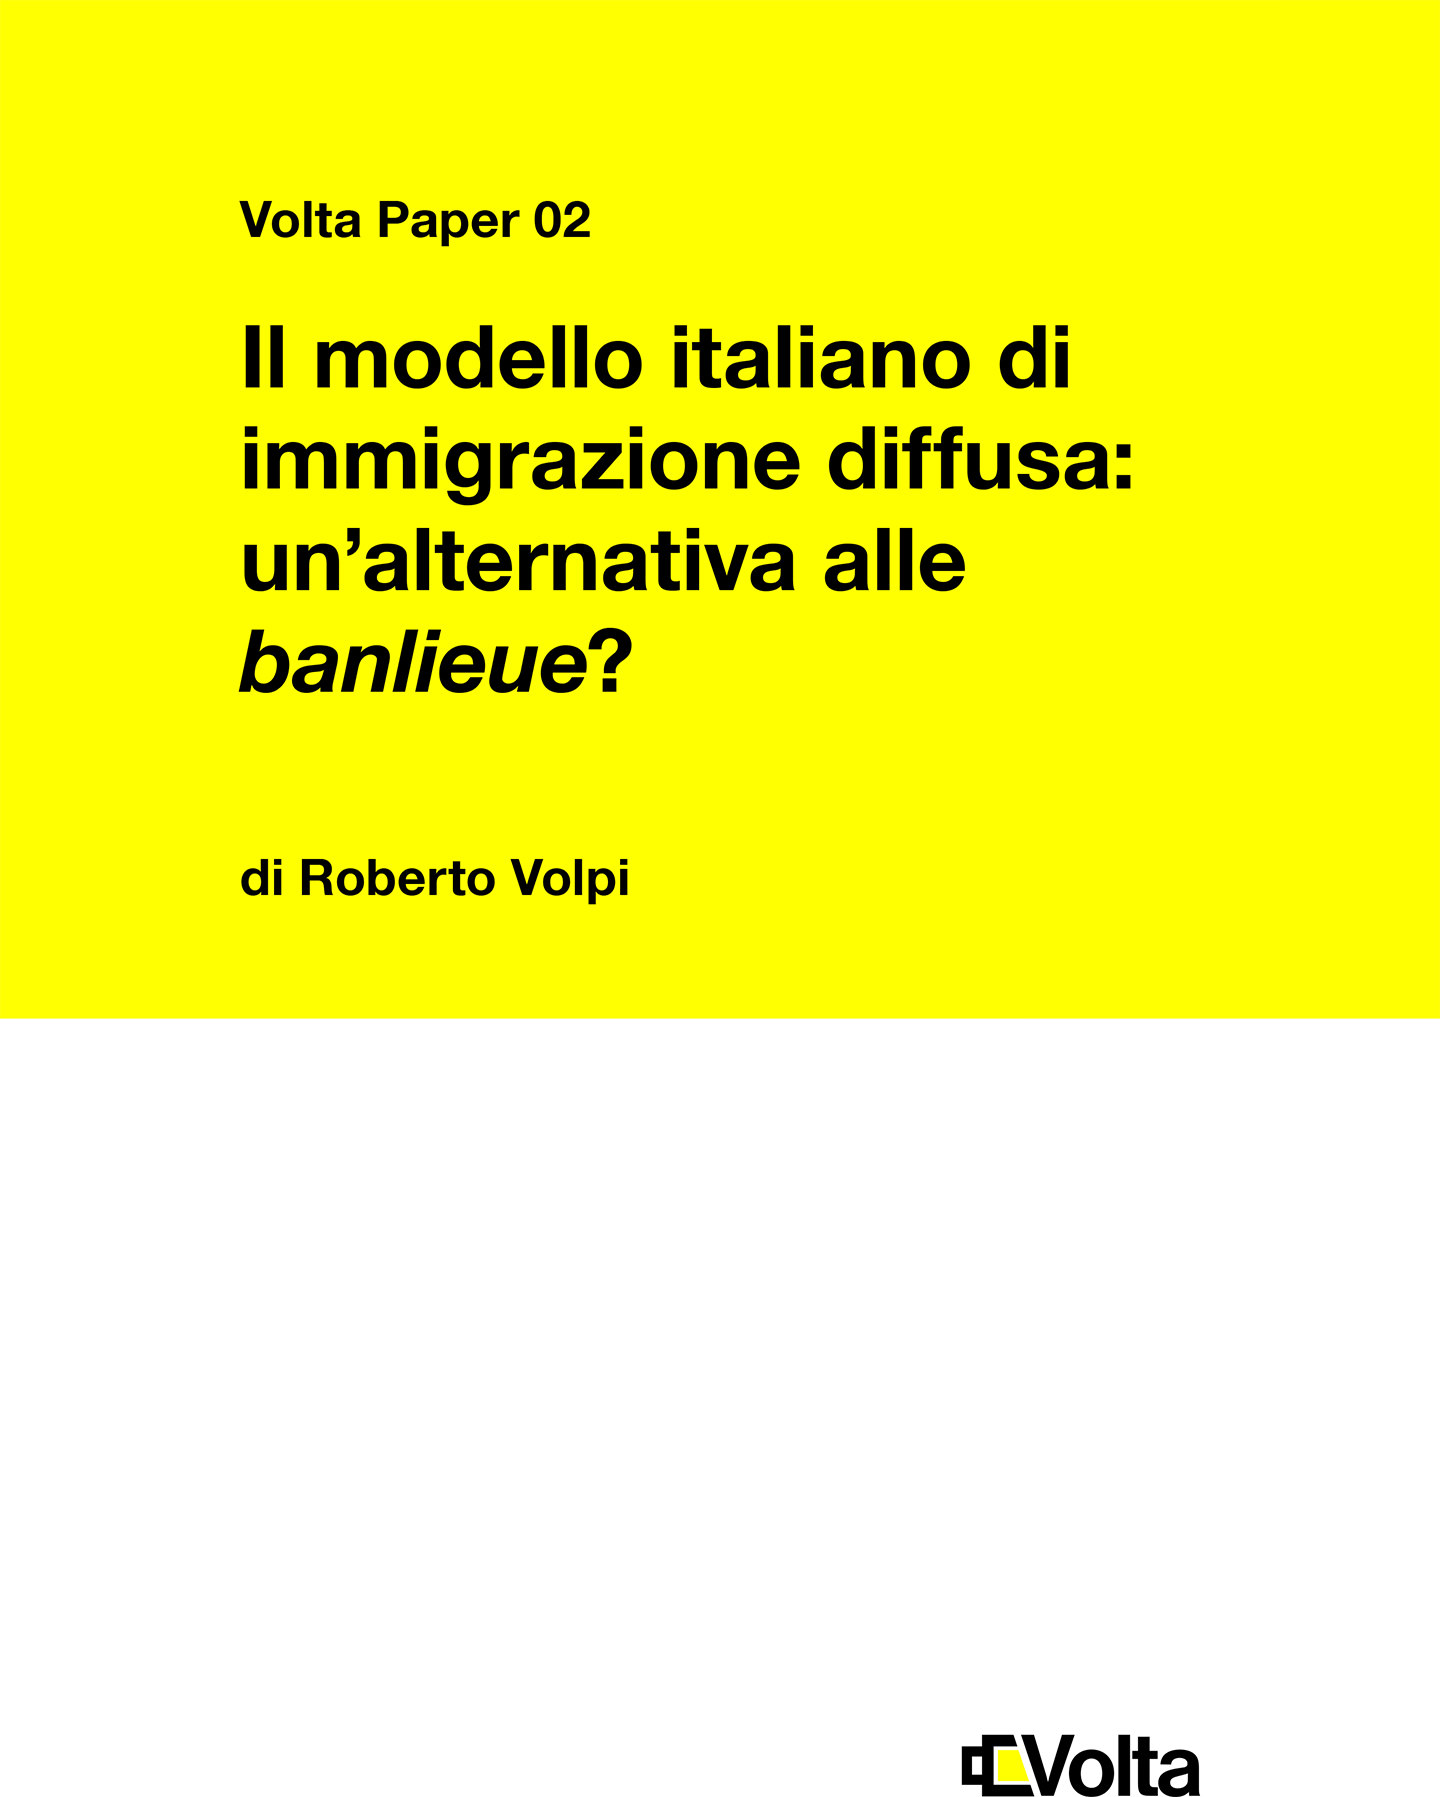 Il modello italiano di immigrazione diffusa